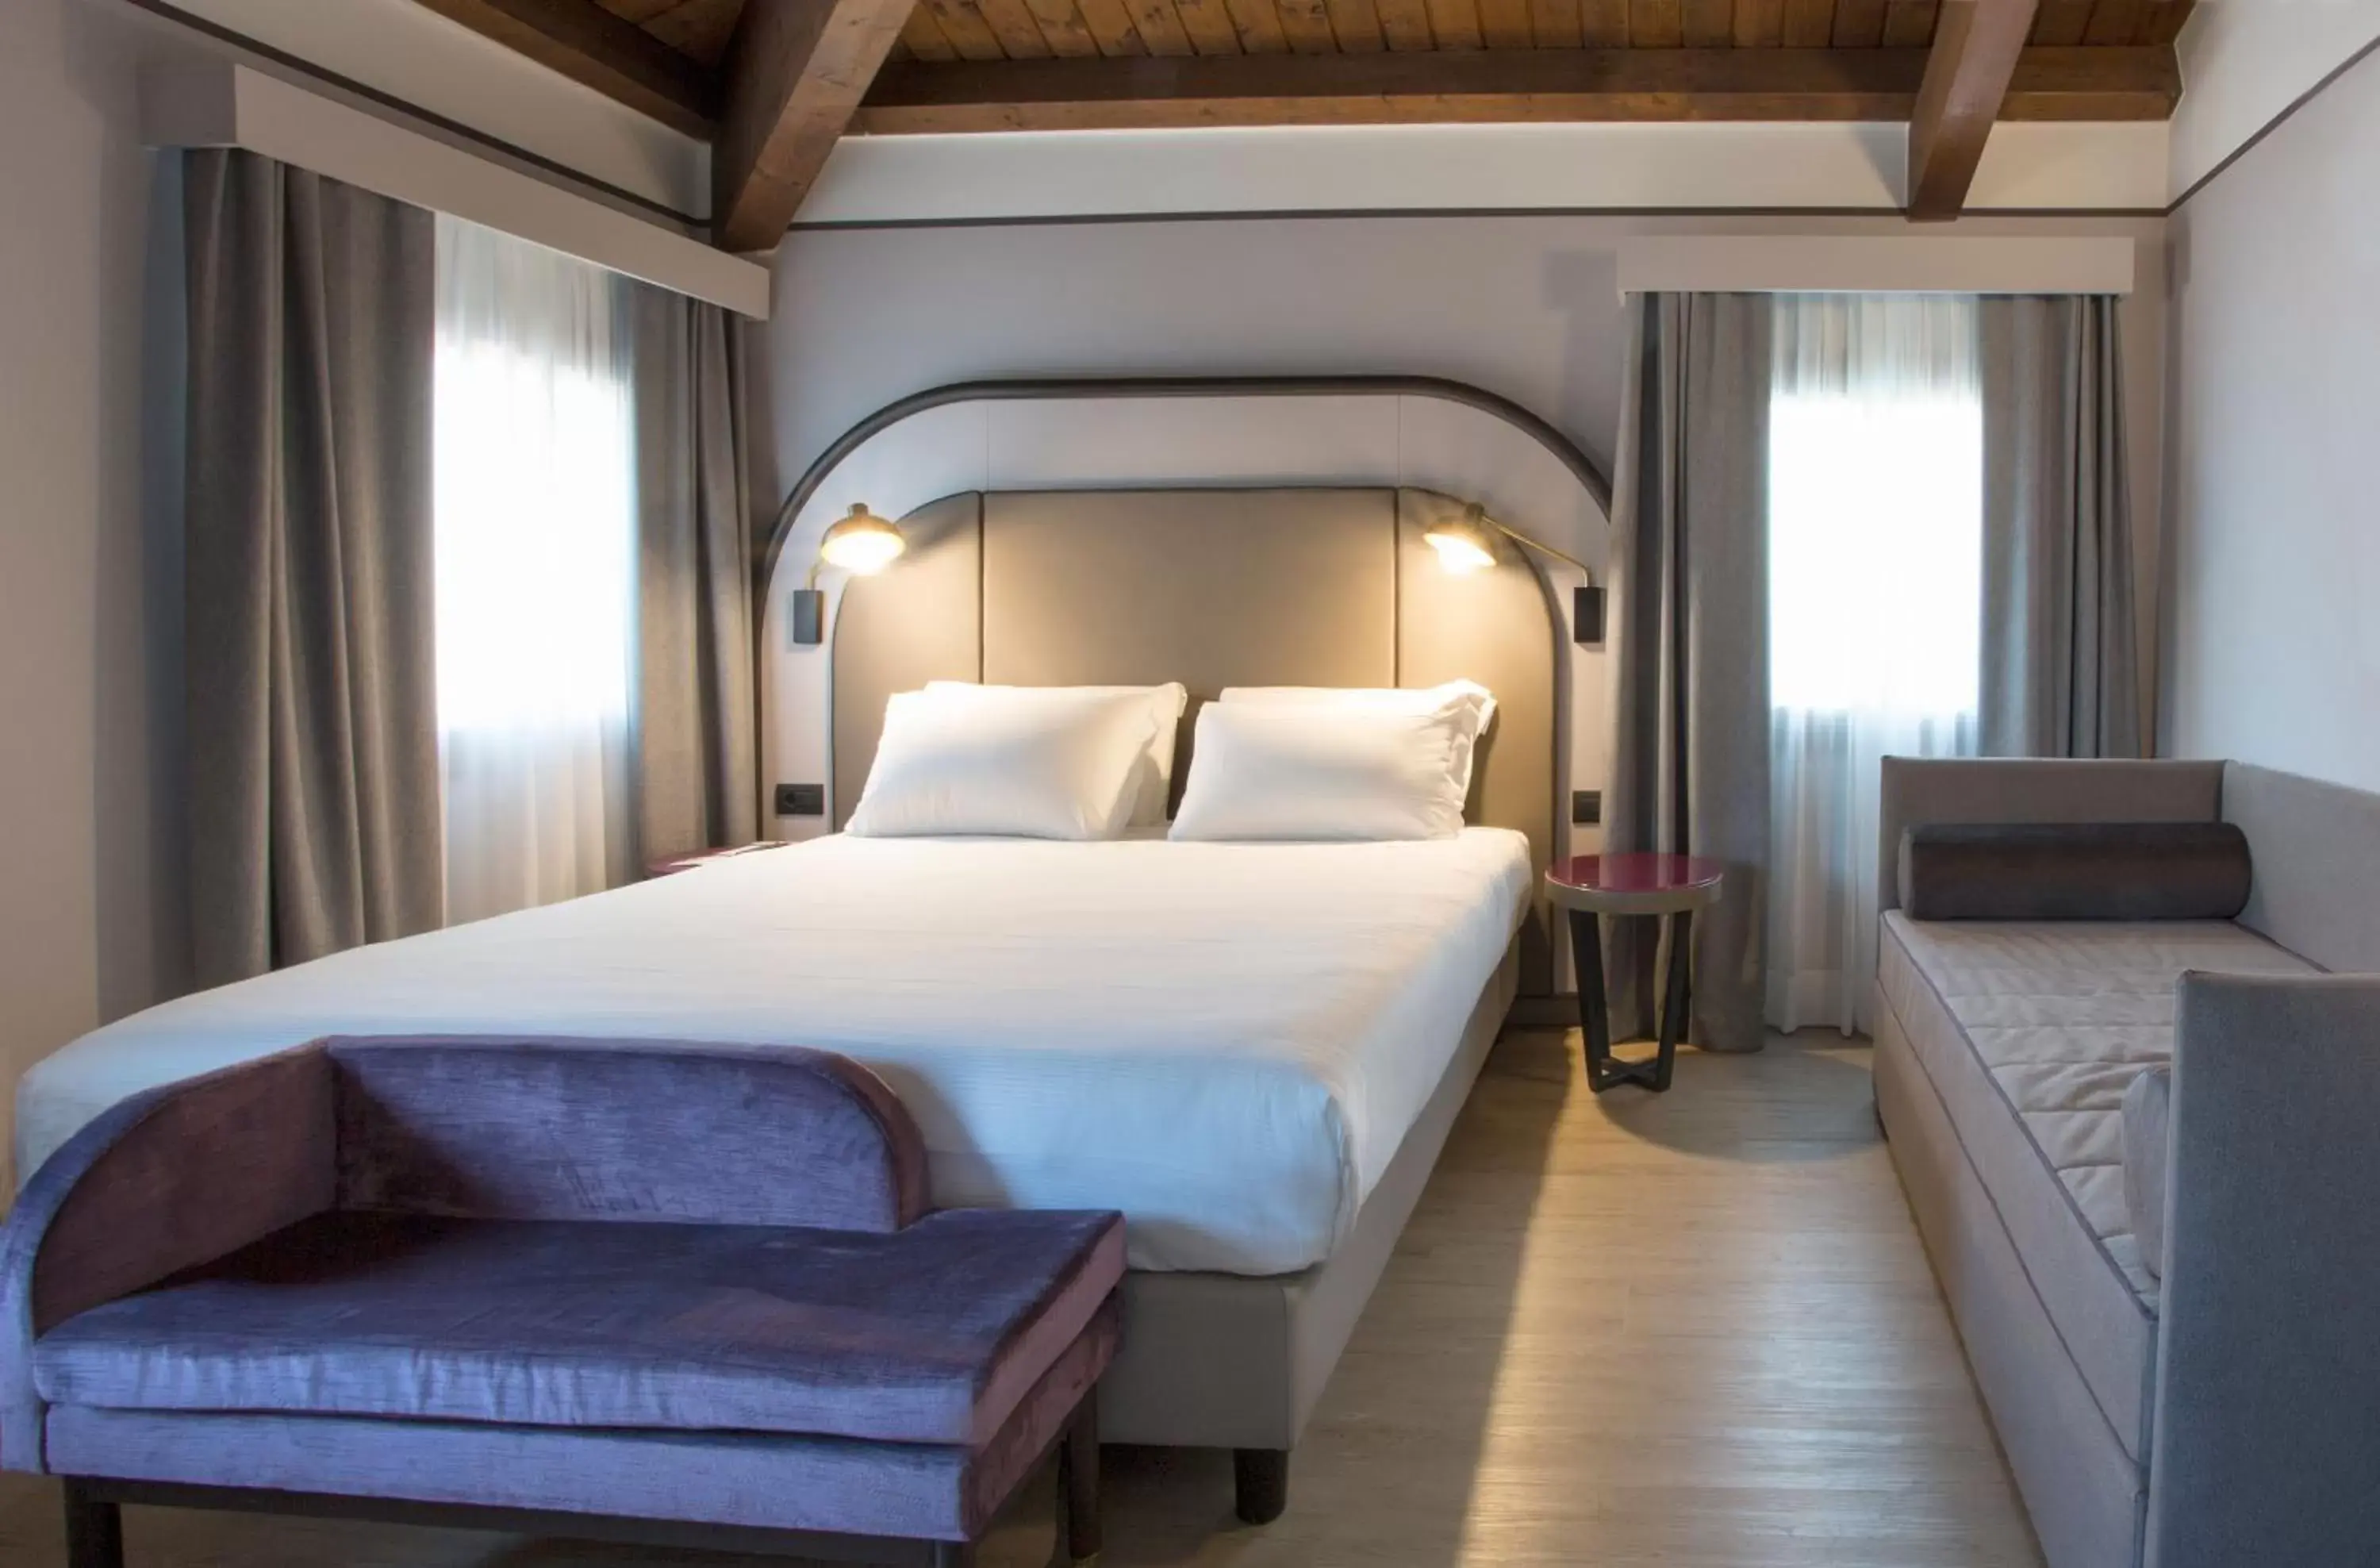 Bed in BEST WESTERN Titian Inn Hotel Treviso